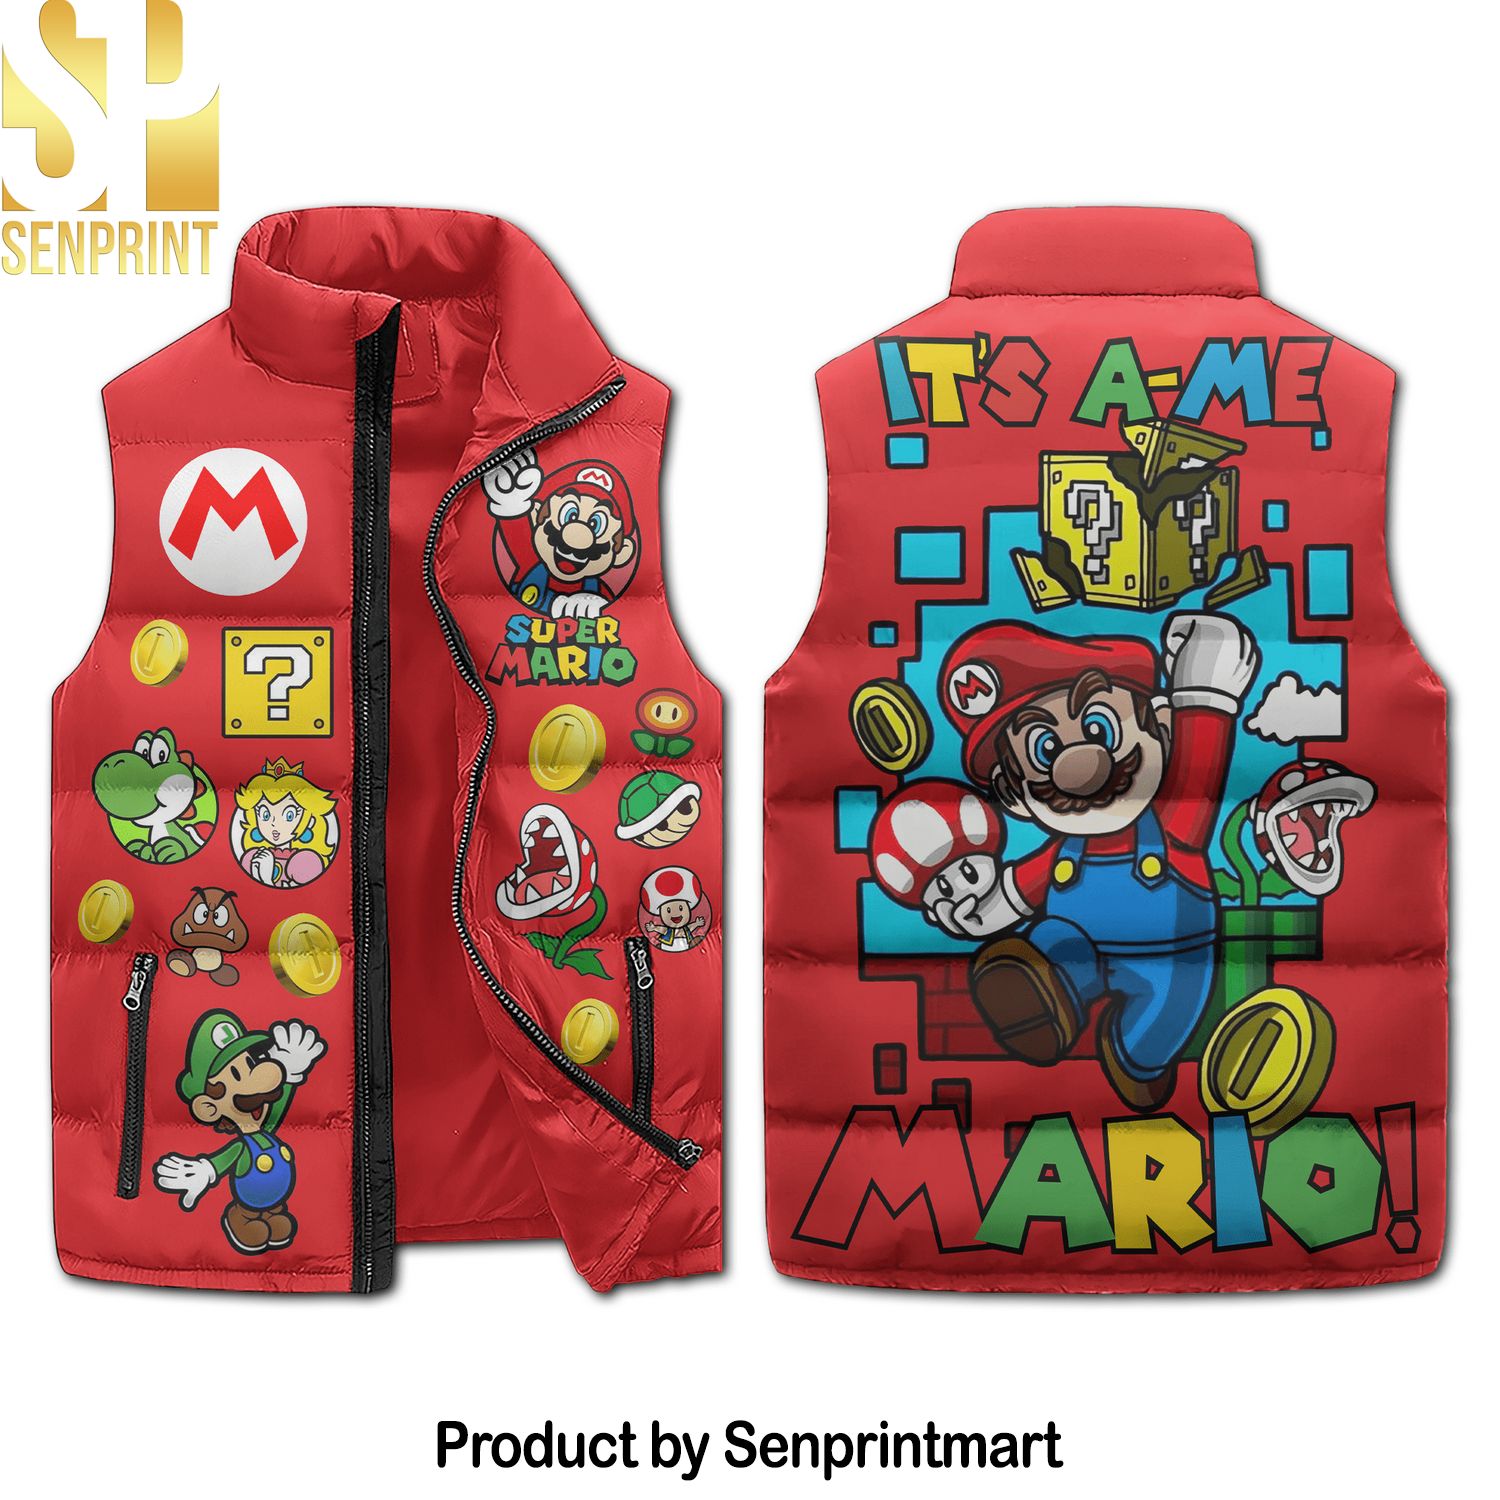 Super Mario New Style Sleeveless Jacket